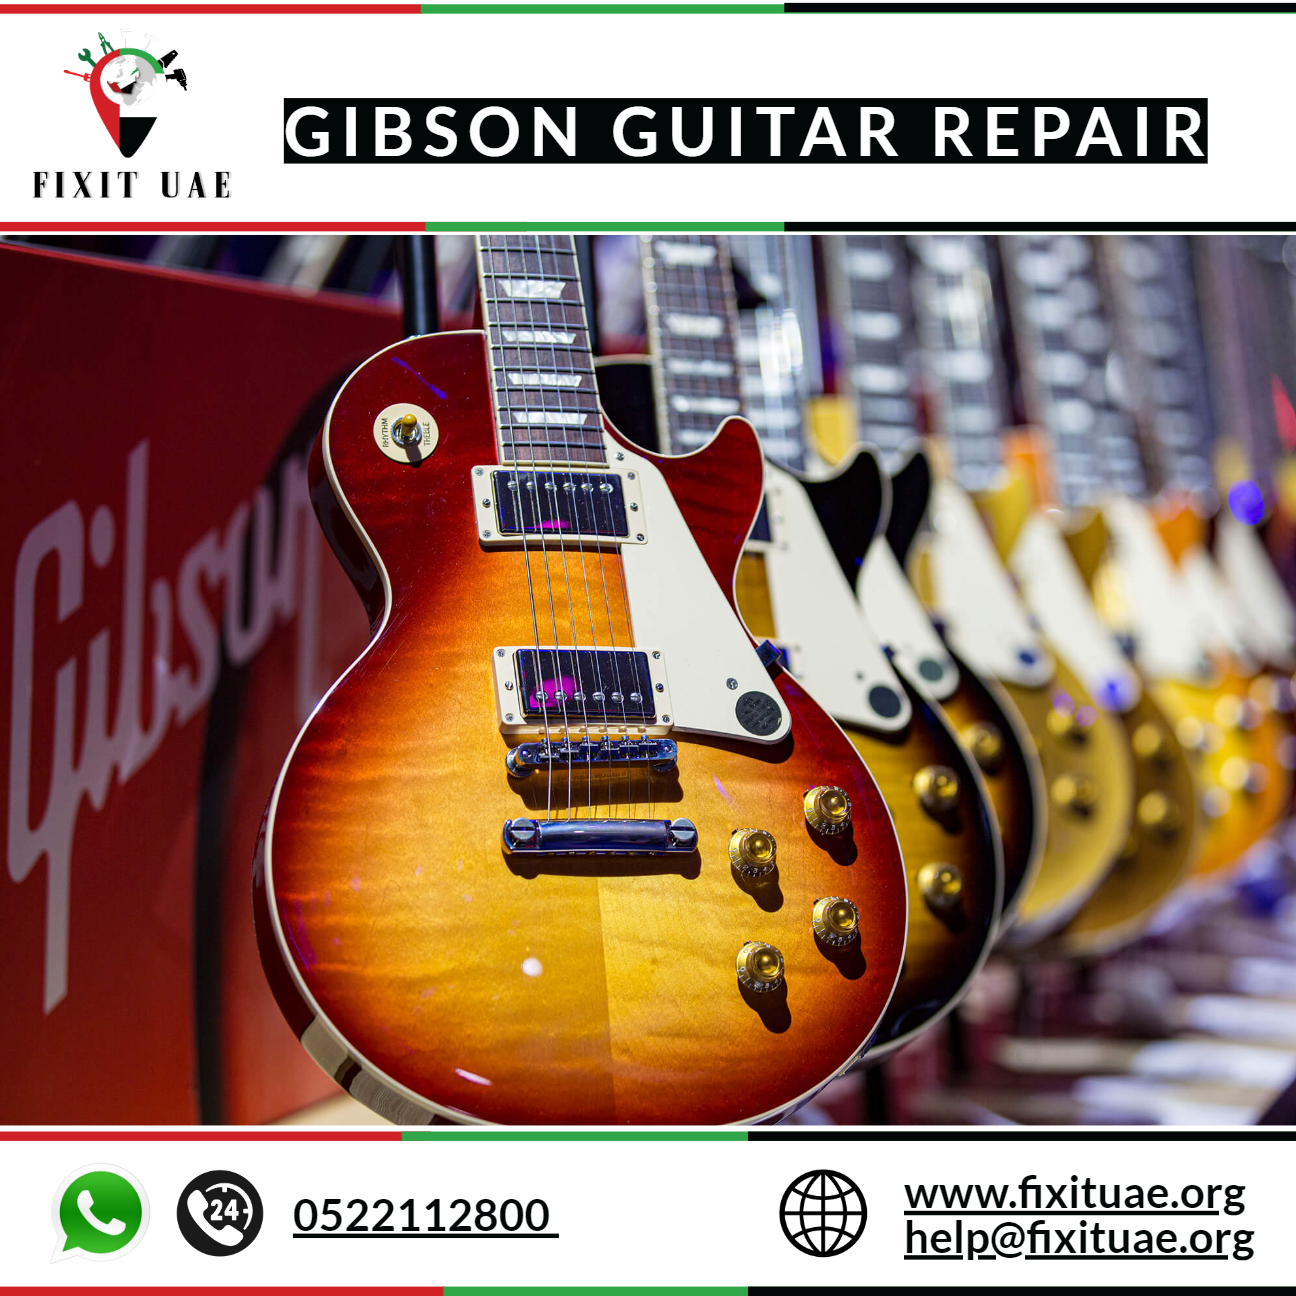 Gibson guitar repair